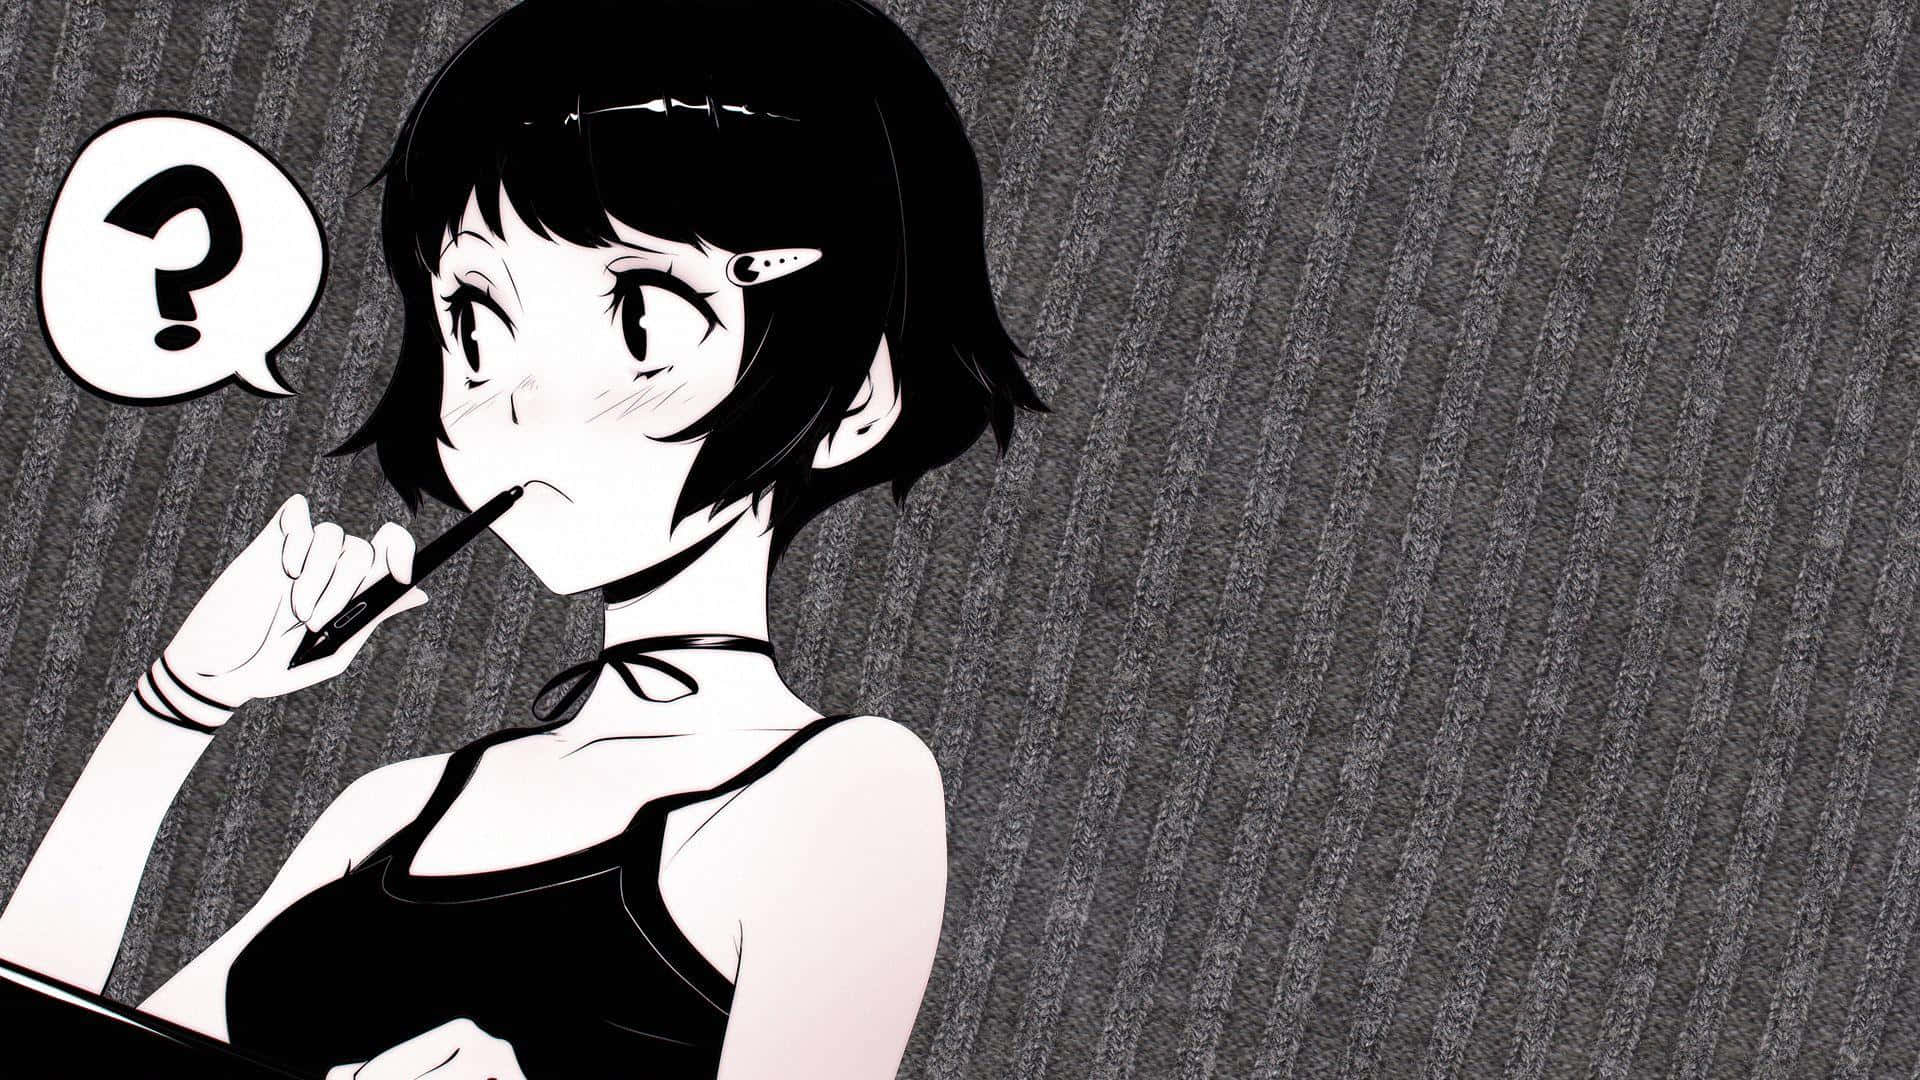 Short Haired Girl In Black And White Anime Pfp Wallpaper